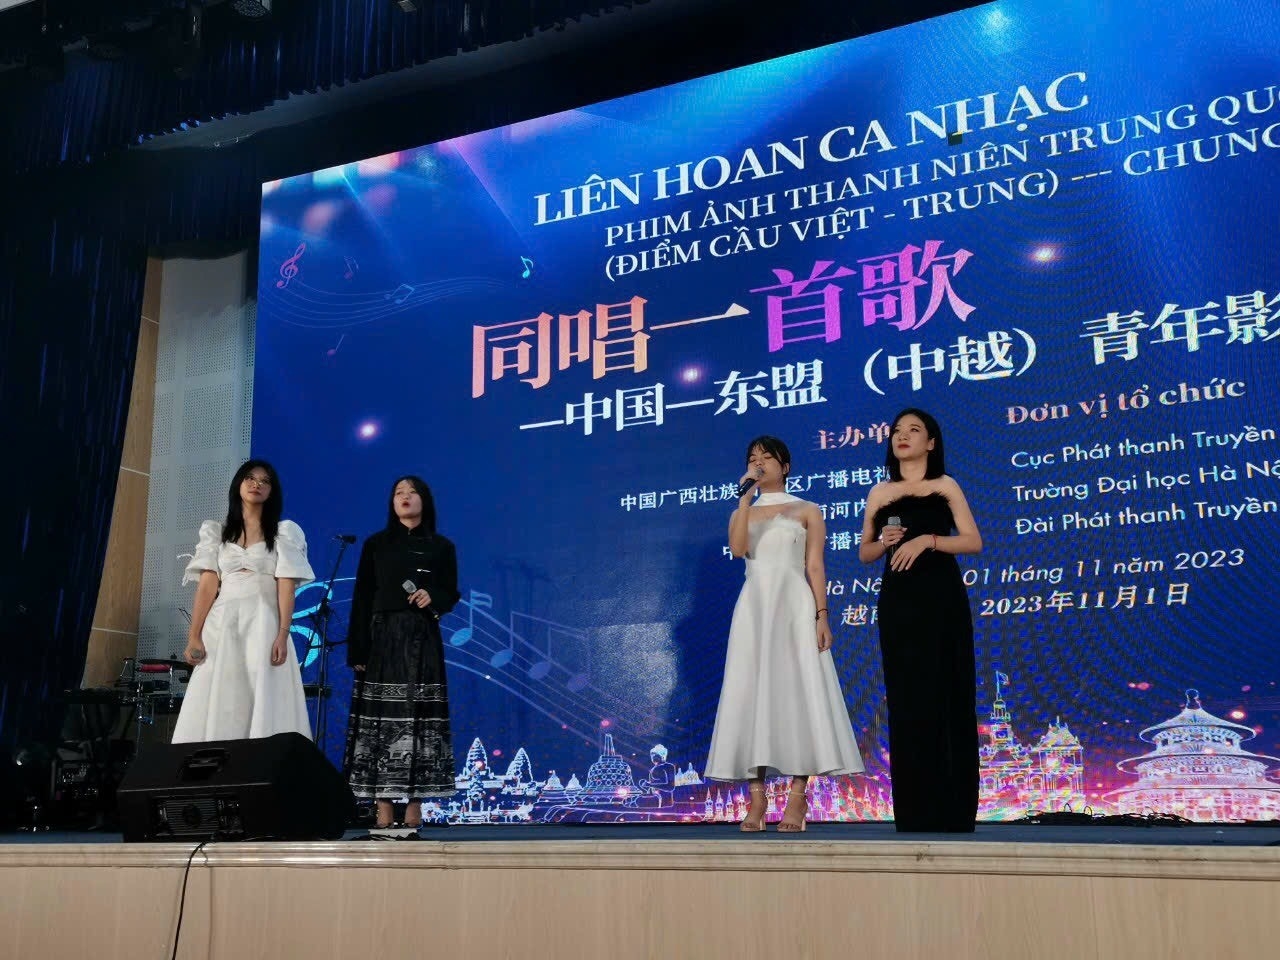 越中青年共同演唱电影歌曲、表演中国传统舞蹈、演奏两国民族乐器……